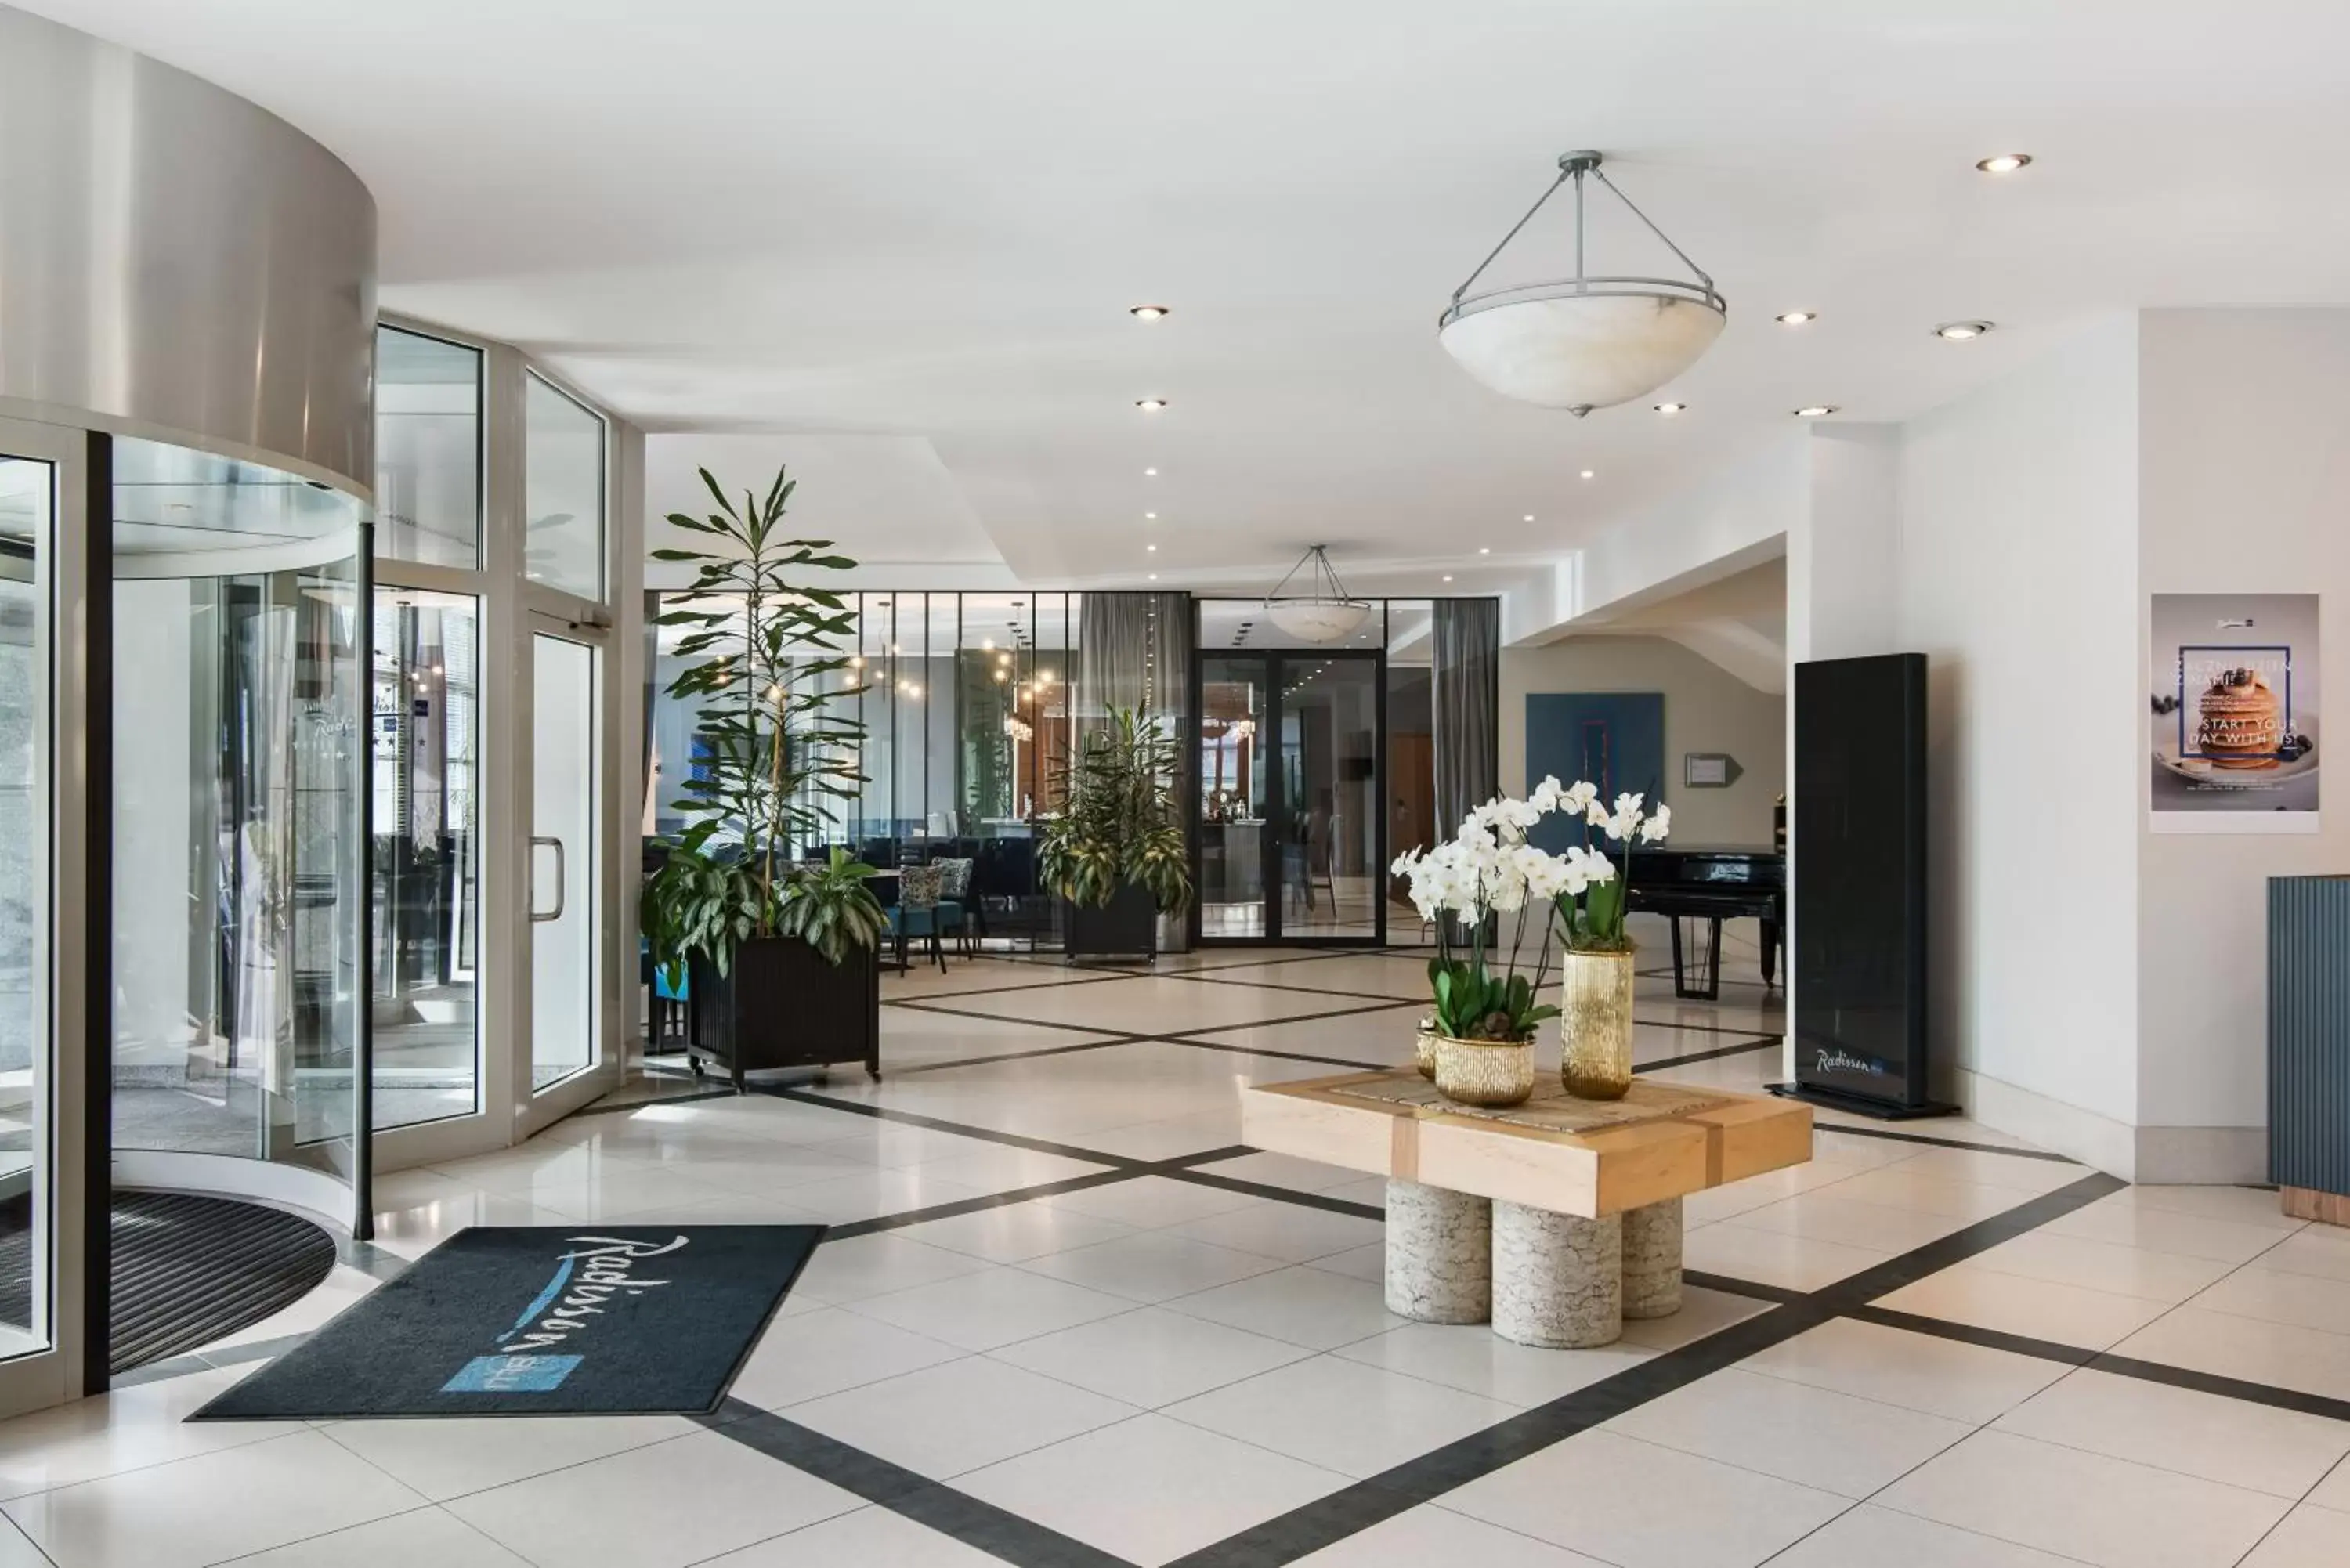 Lobby or reception, Lobby/Reception in Radisson Blu Hotel Wroclaw